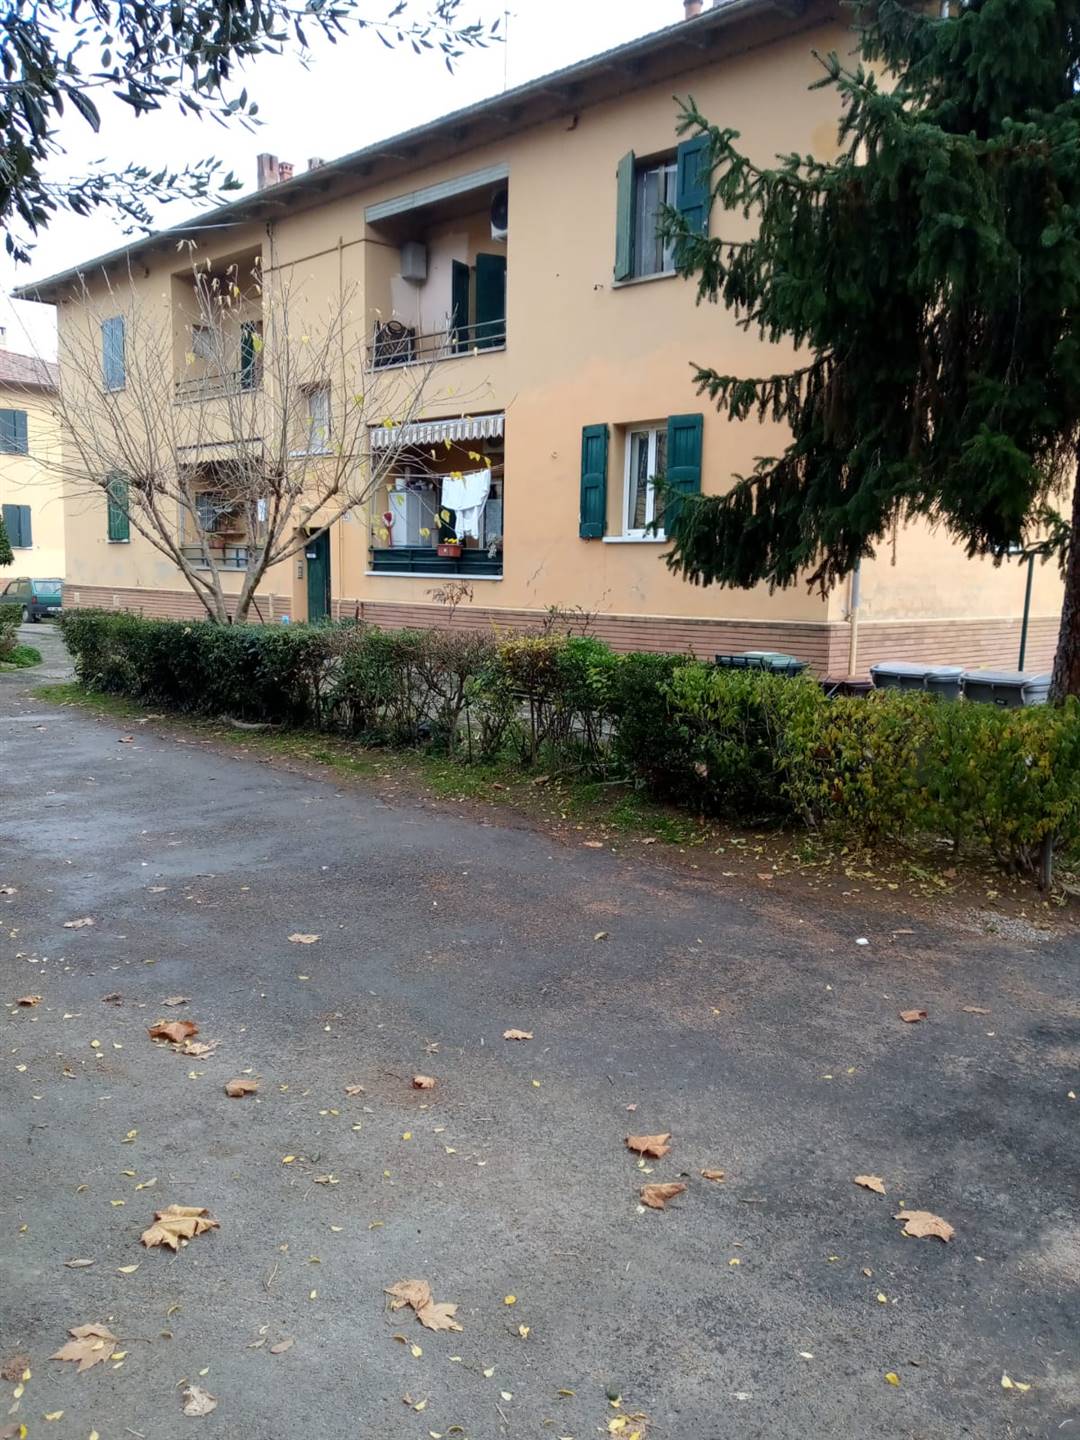 Appartamento in vendita a Sasso Marconi, 3 locali, prezzo € 65.000 | PortaleAgenzieImmobiliari.it